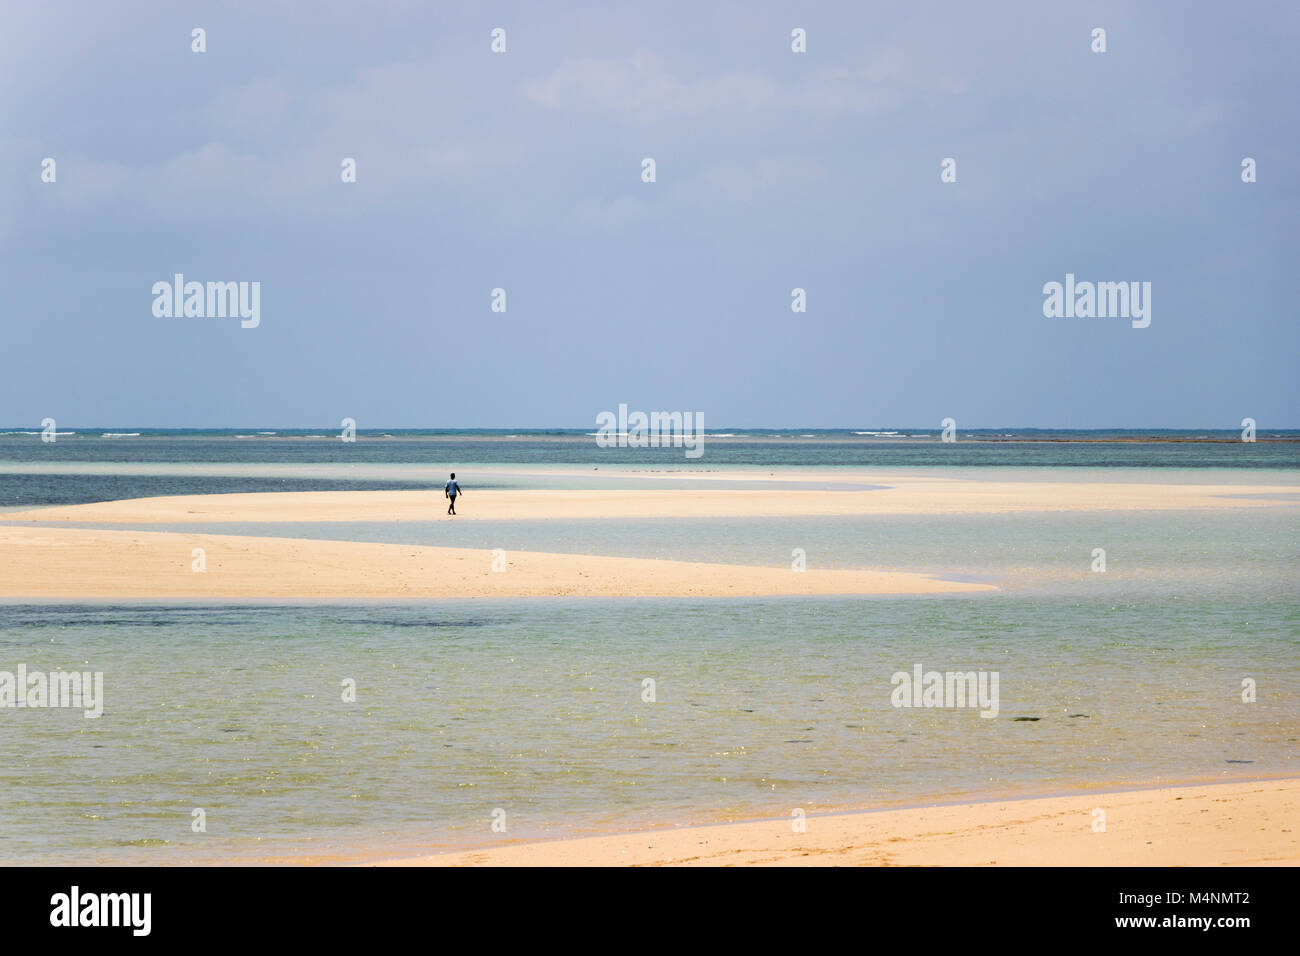 Lone persona che cammina desert island beach in Mozambico con mare turchese Foto Stock